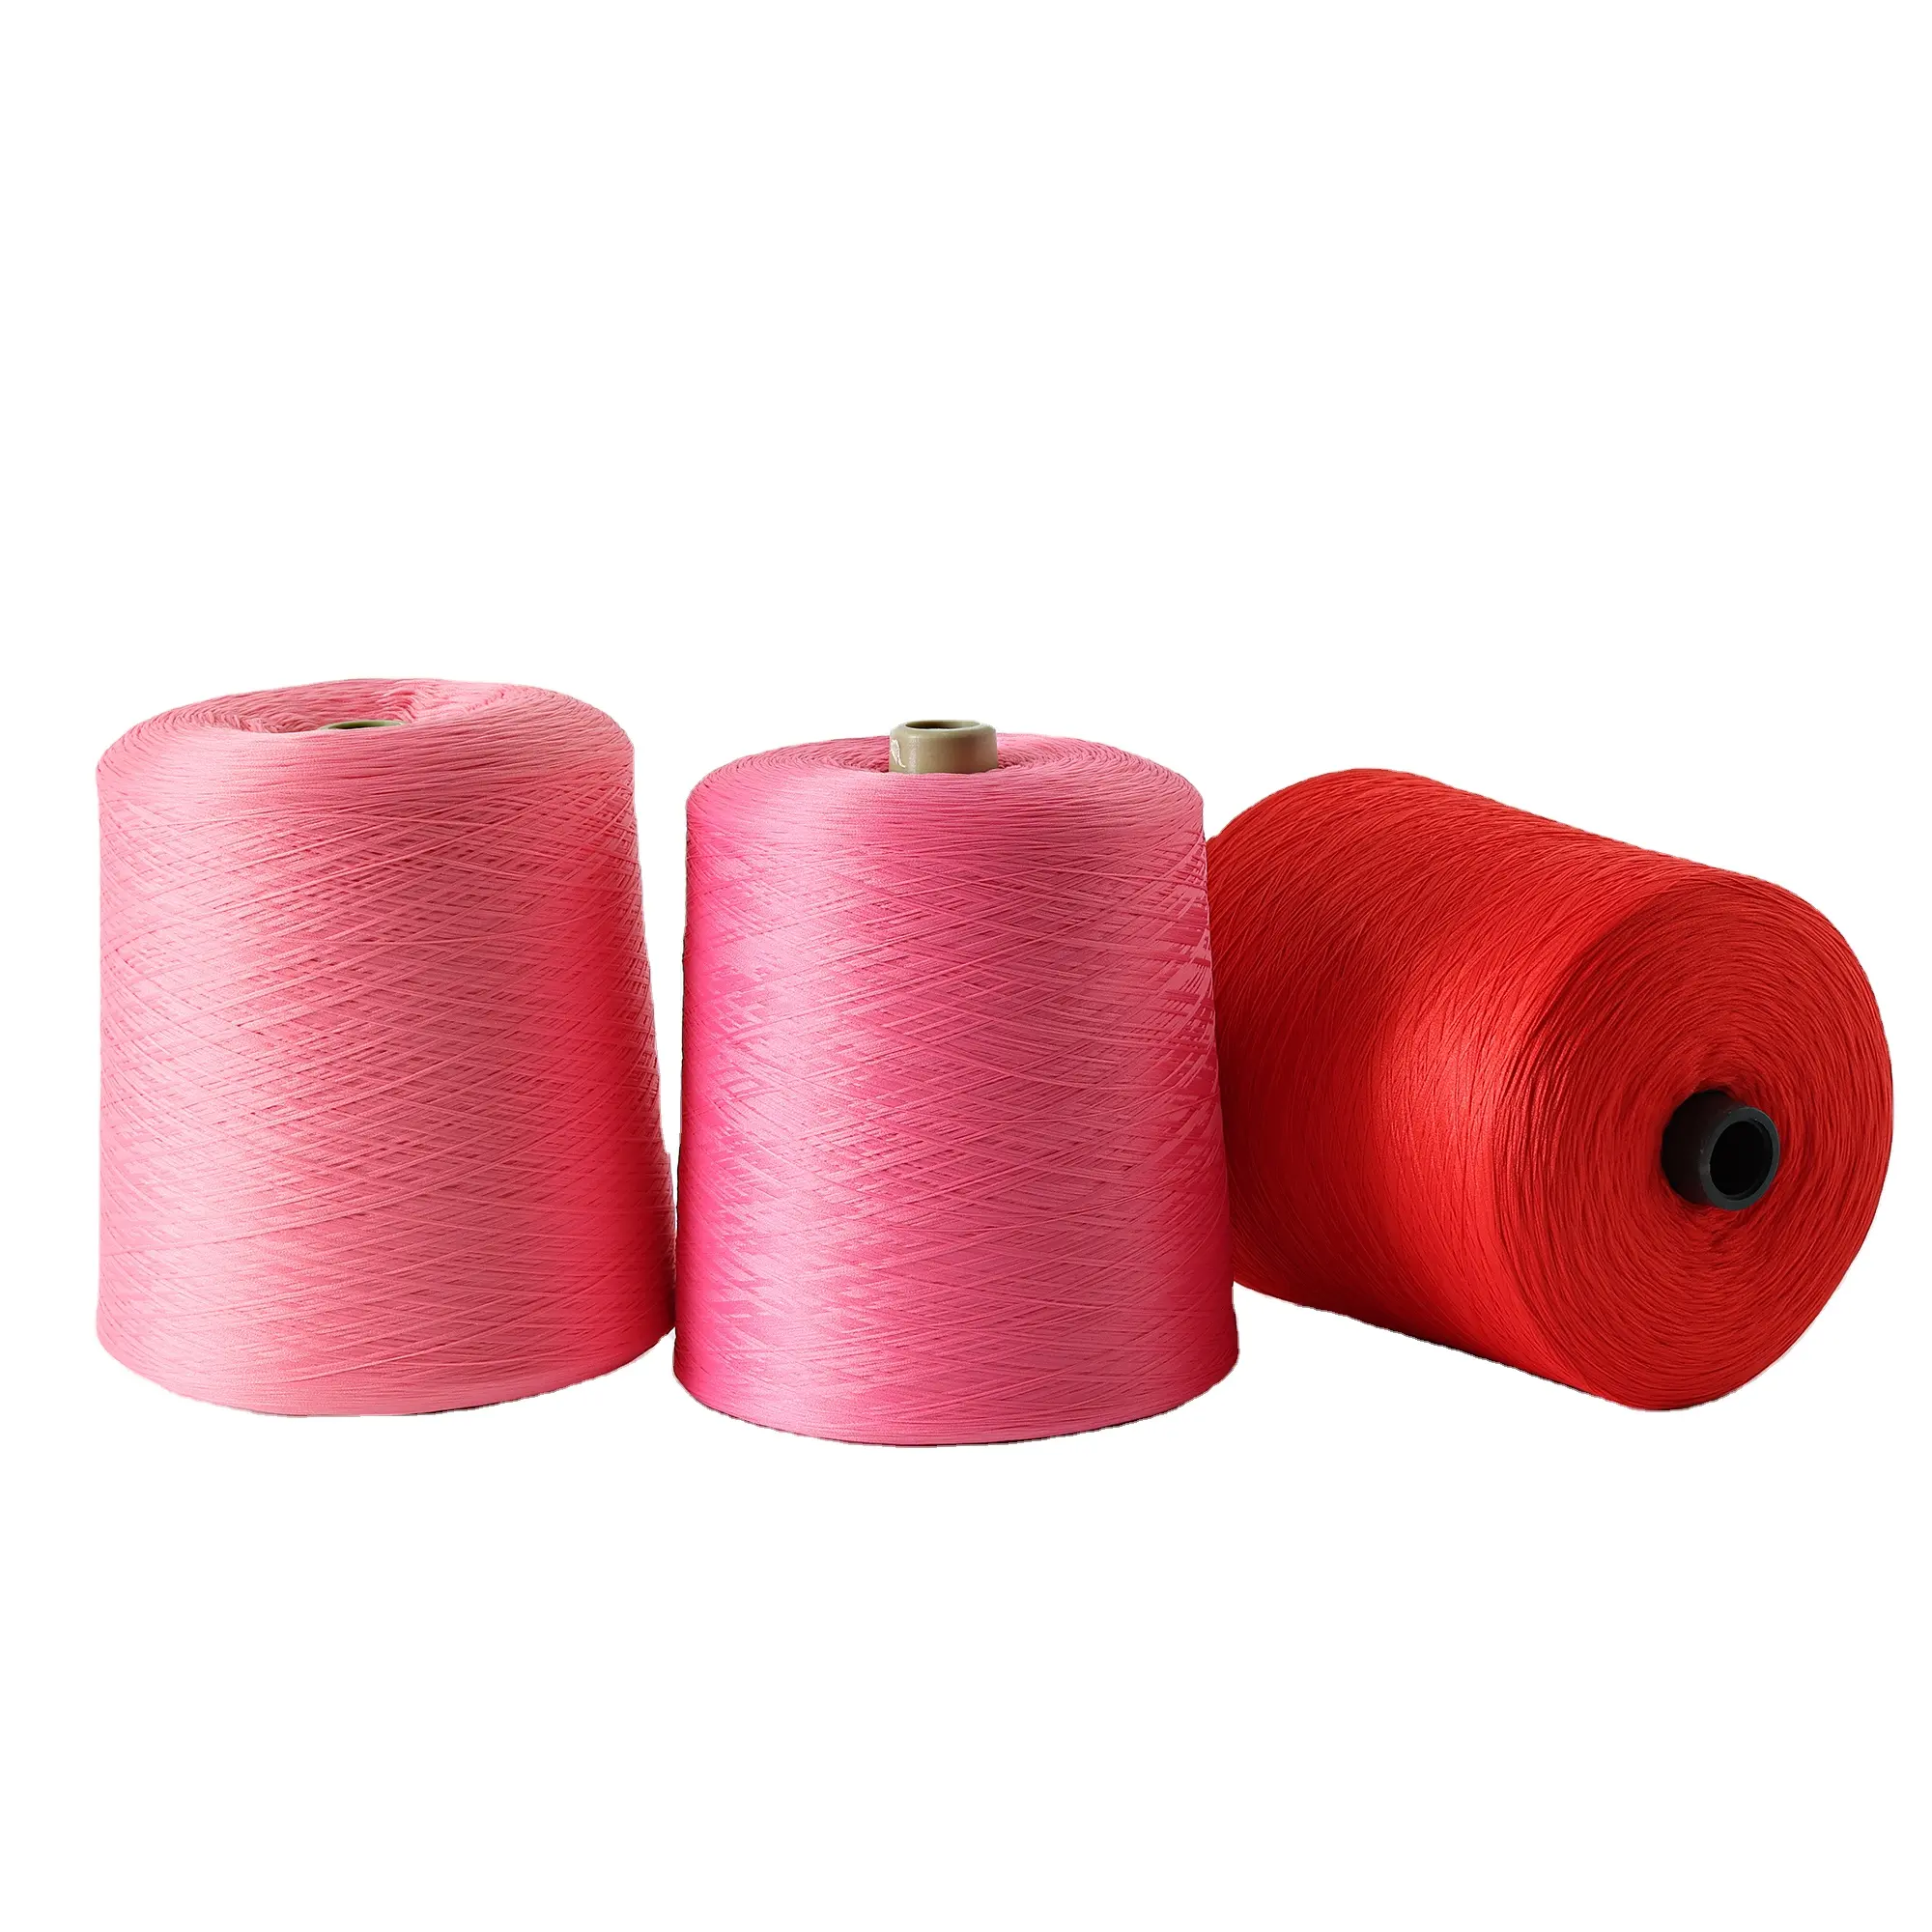 糸かぎ針編み100% ポリエステル糸縫製糸DTY糸編み物用縫製エッジロック